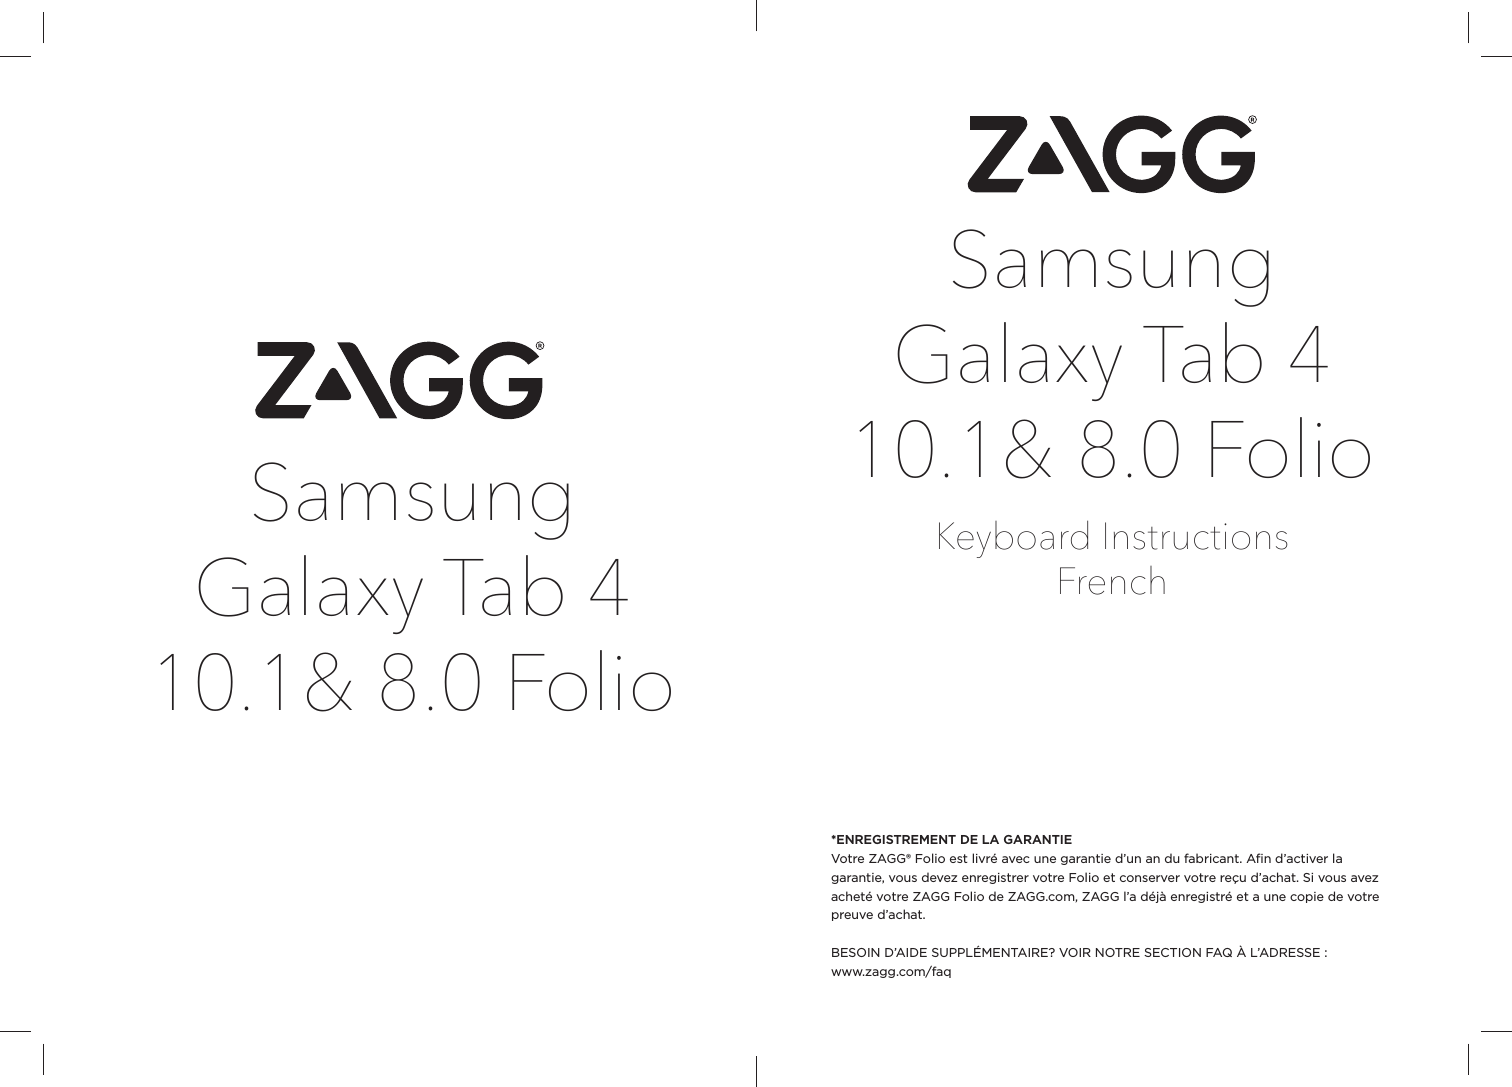 Samsung Galaxy Tab 4 10.1&amp; 8.0 FolioKeyboard InstructionsFrench*ENREGISTREMENT DE LA GARANTIEVotre ZAGG® Folio est livré avec une garantie d’un an du fabricant. Aﬁ n d’activer la garantie, vous devez enregistrer votre Folio et conserver votre reçu d’achat. Si vous avez acheté votre ZAGG Folio de ZAGG.com, ZAGG l’a déjà enregistré et a une copie de votre preuve d’achat.BESOIN D’AIDE SUPPLÉMENTAIRE? VOIR NOTRE SECTION FAQ À L’ADRESSE : www.zagg.com/faqSamsung Galaxy Tab 4 10.1&amp; 8.0 Folio